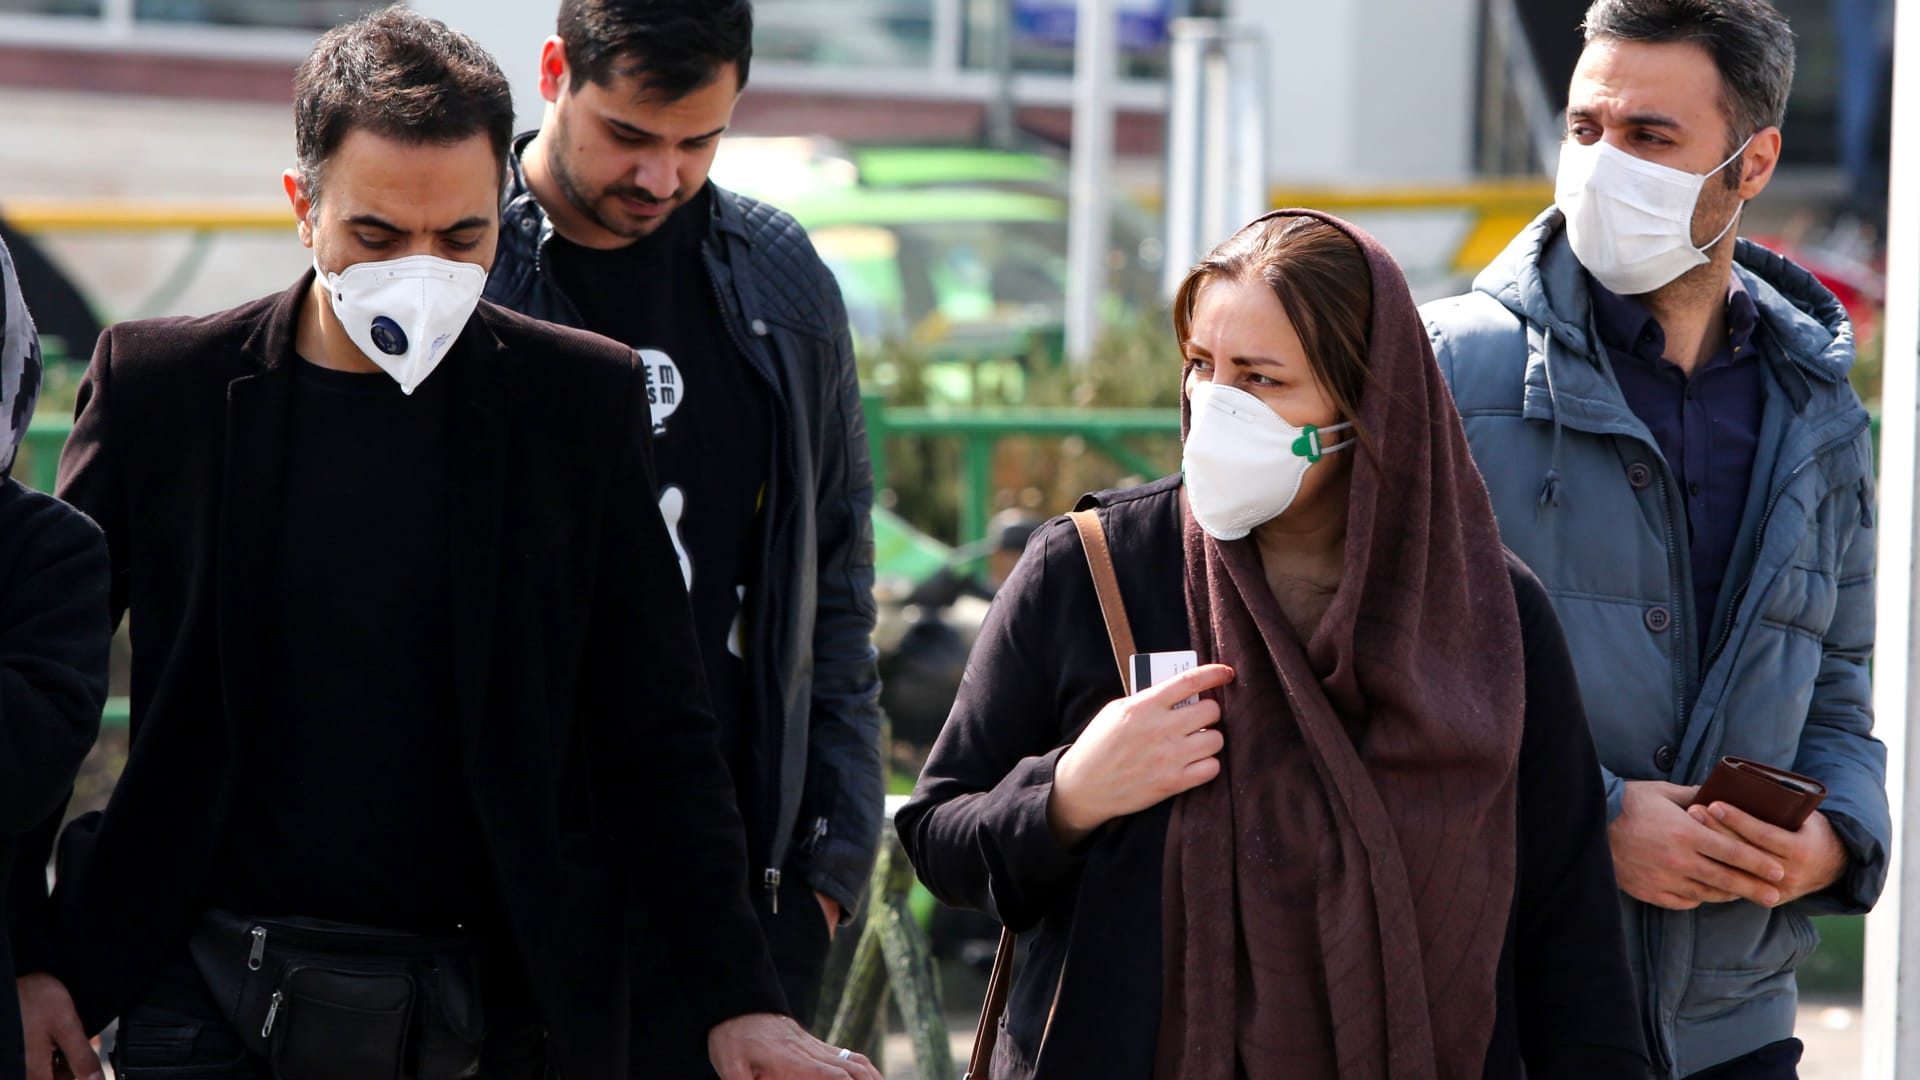 إيقاف صلاة الجمعة لأول مرة في إيران بسبب فيروس كورونا